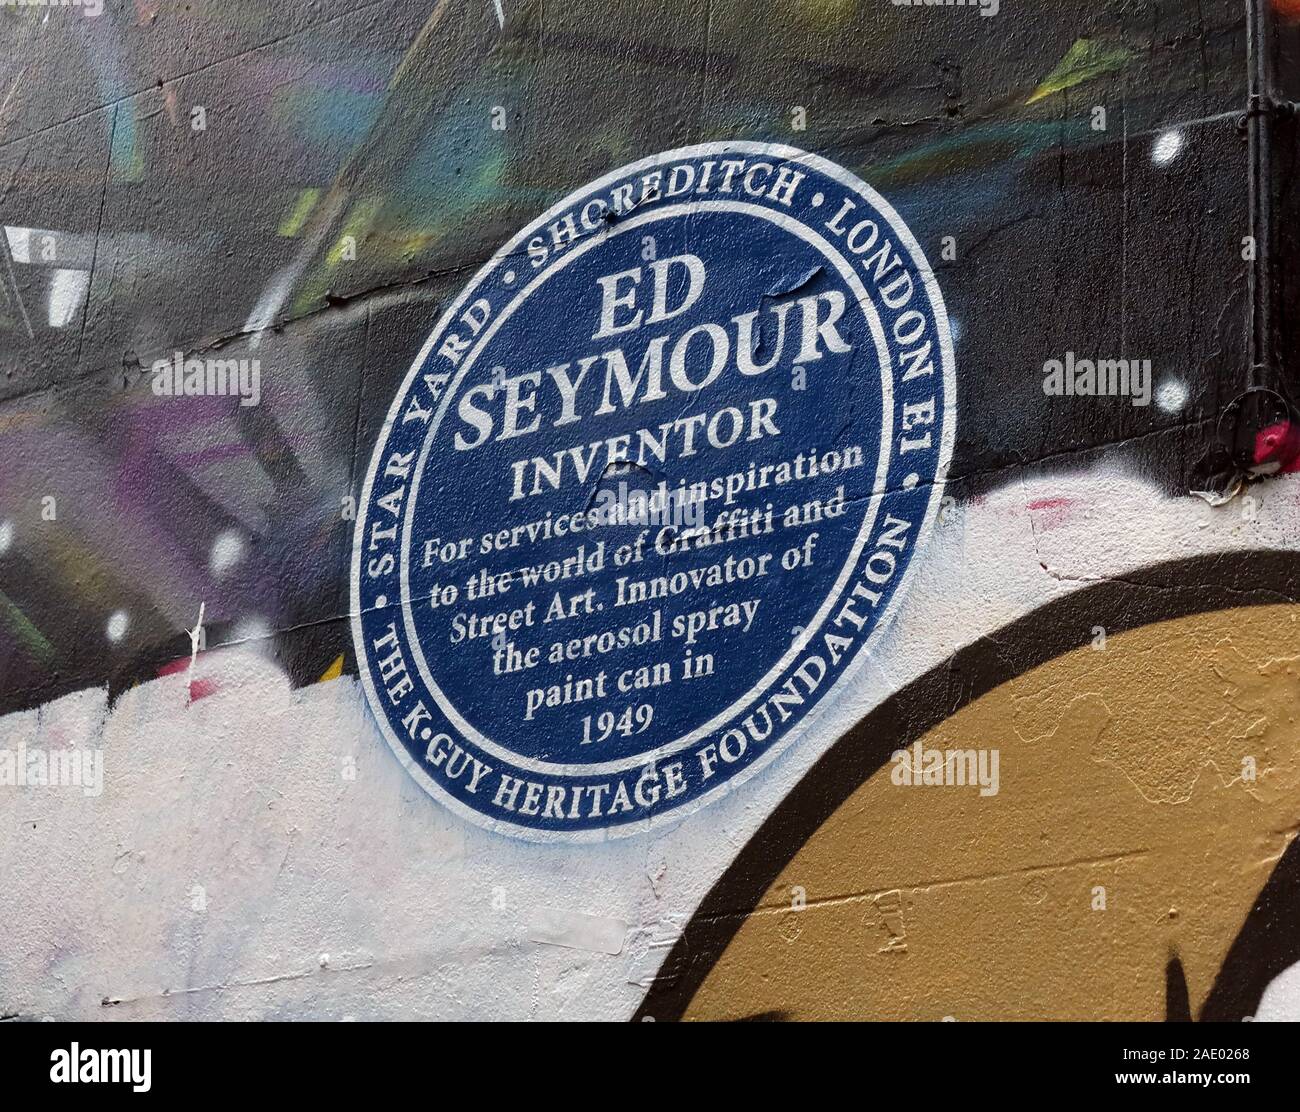 Blaue Plakette, zum Gedenken an Ed Seymour, Erfinder der Aerosolspray-Dose im Jahr 1949. Star Yard, Shoreditch, Brick Lane, London, East End, England, Großbritannien Stockfoto